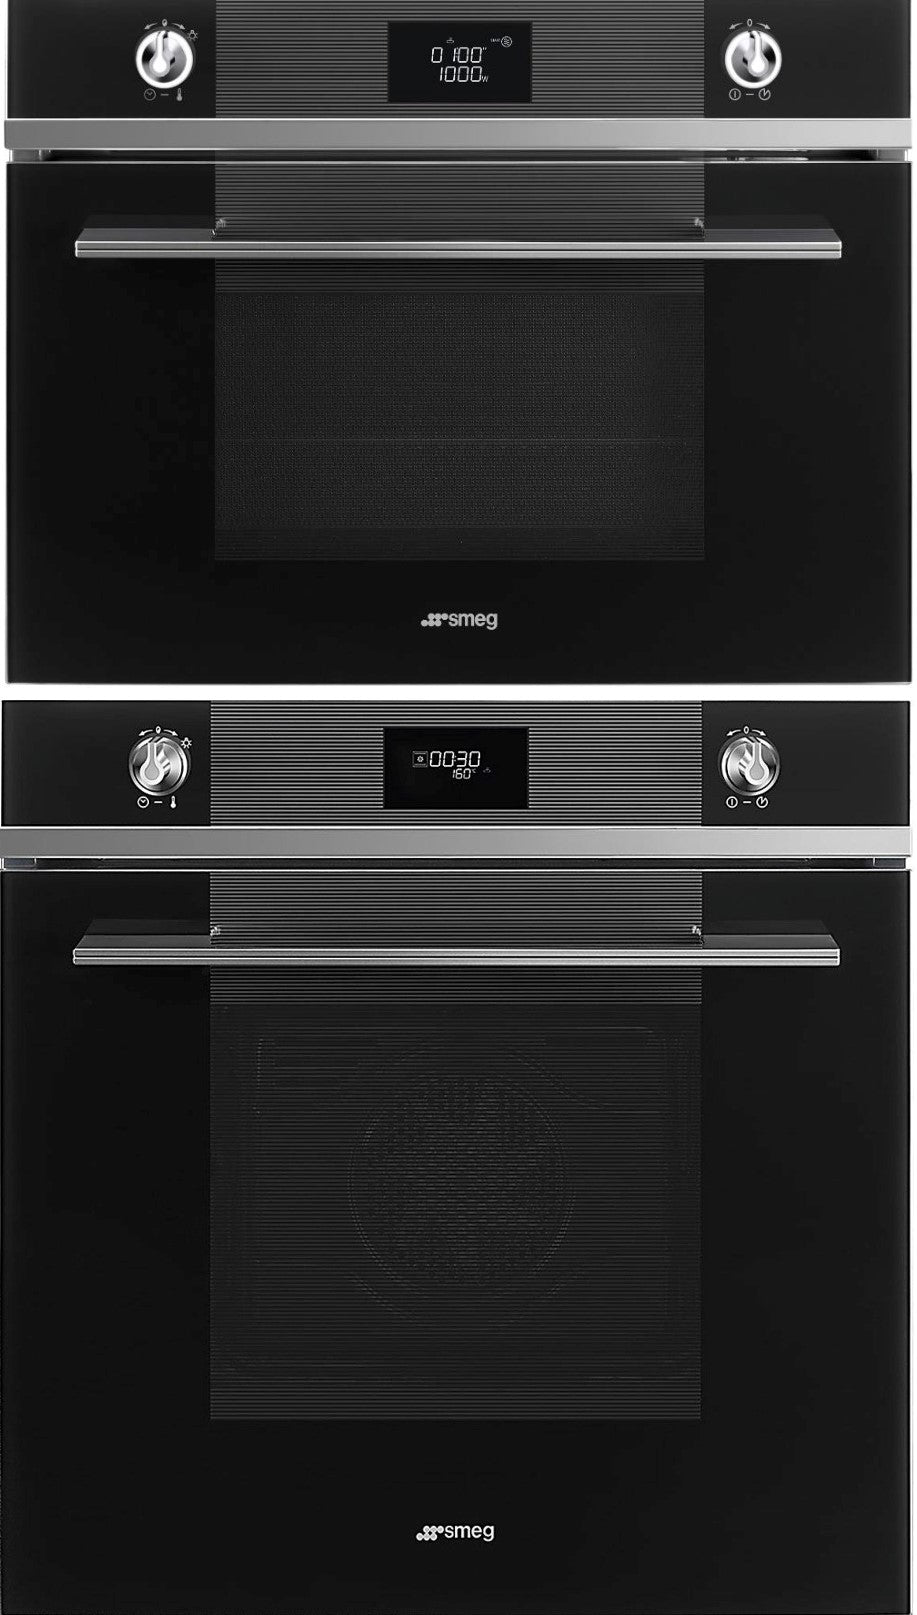 Smeg Black Linea 60cm Oven and Microwave Bundle - Factory Seconds Discount